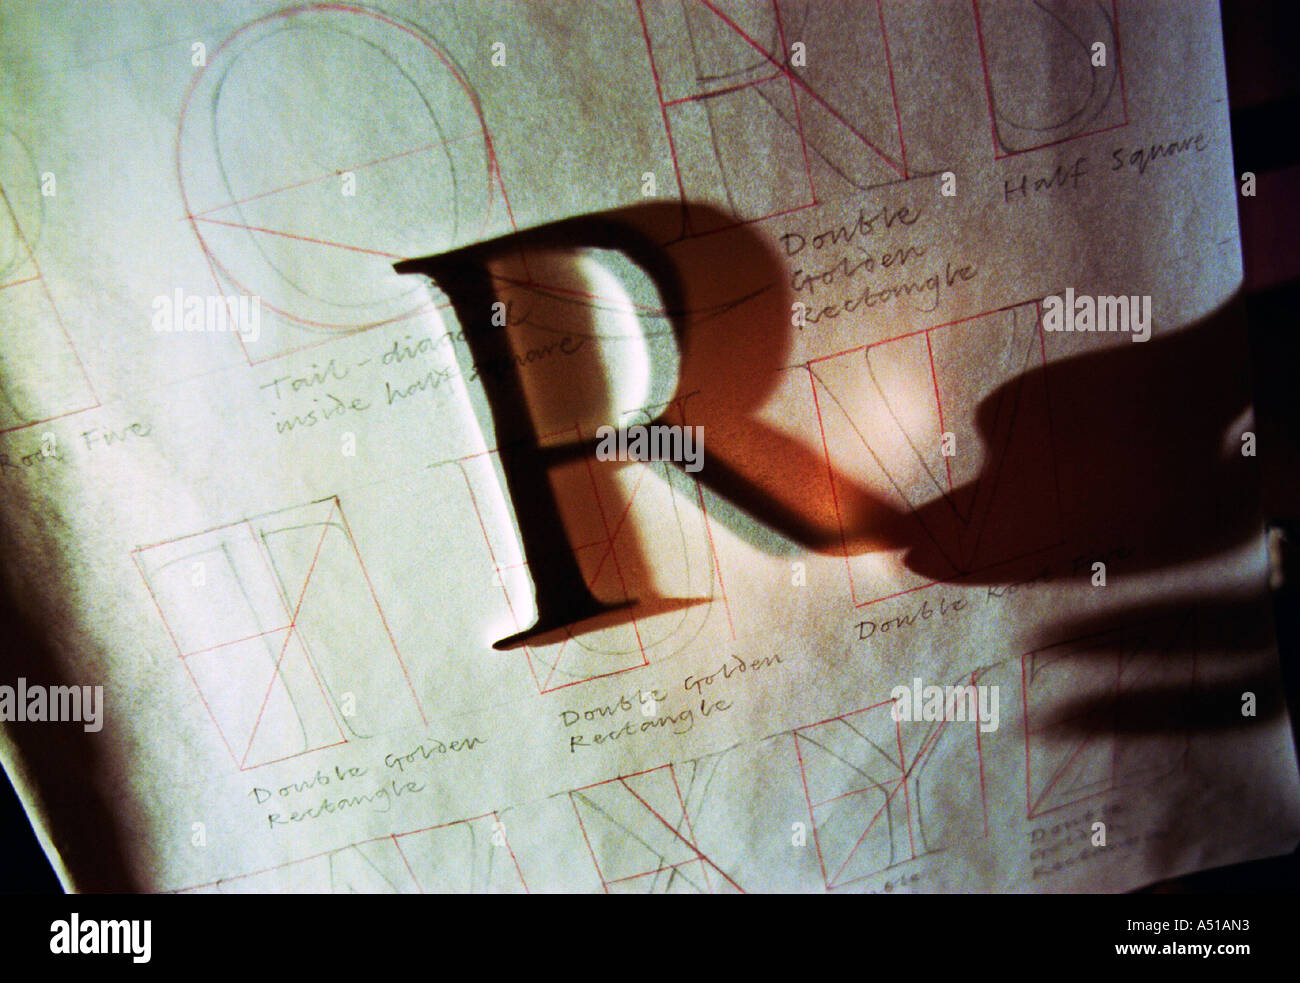 Silhouette di una mano di artisti con un capitale R di un recentemente progettato font o caratteri Foto Stock